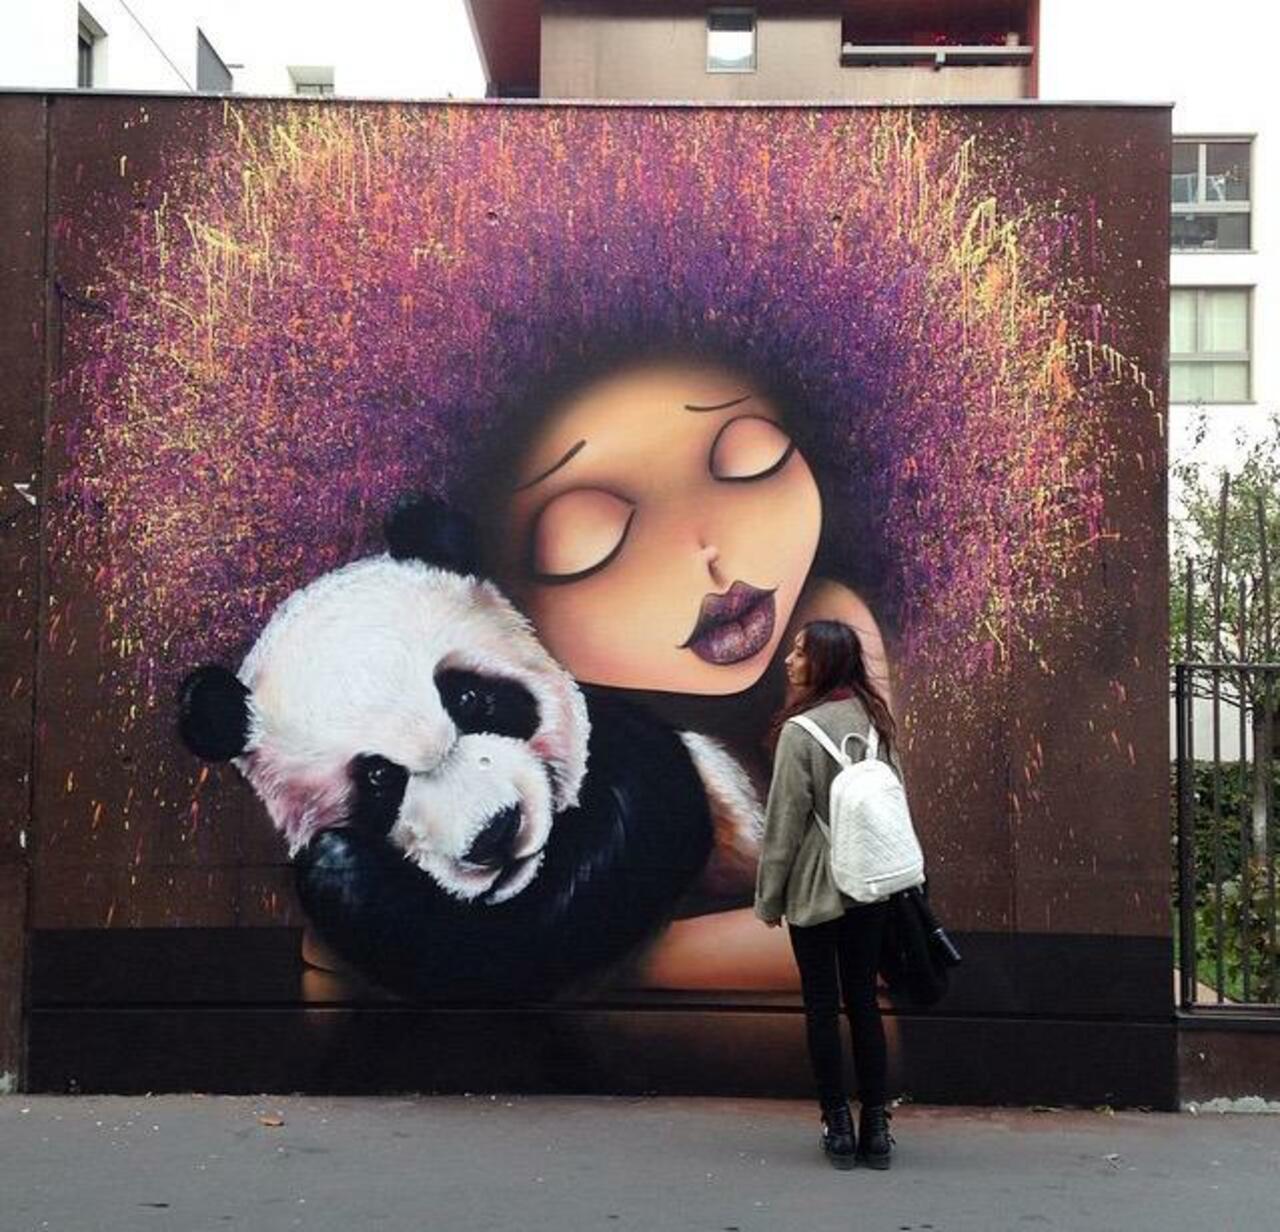 Street Art by VinieGraffiti in Paris 

#art #graffiti #mural #streetart http://t.co/xvWT2EJgye